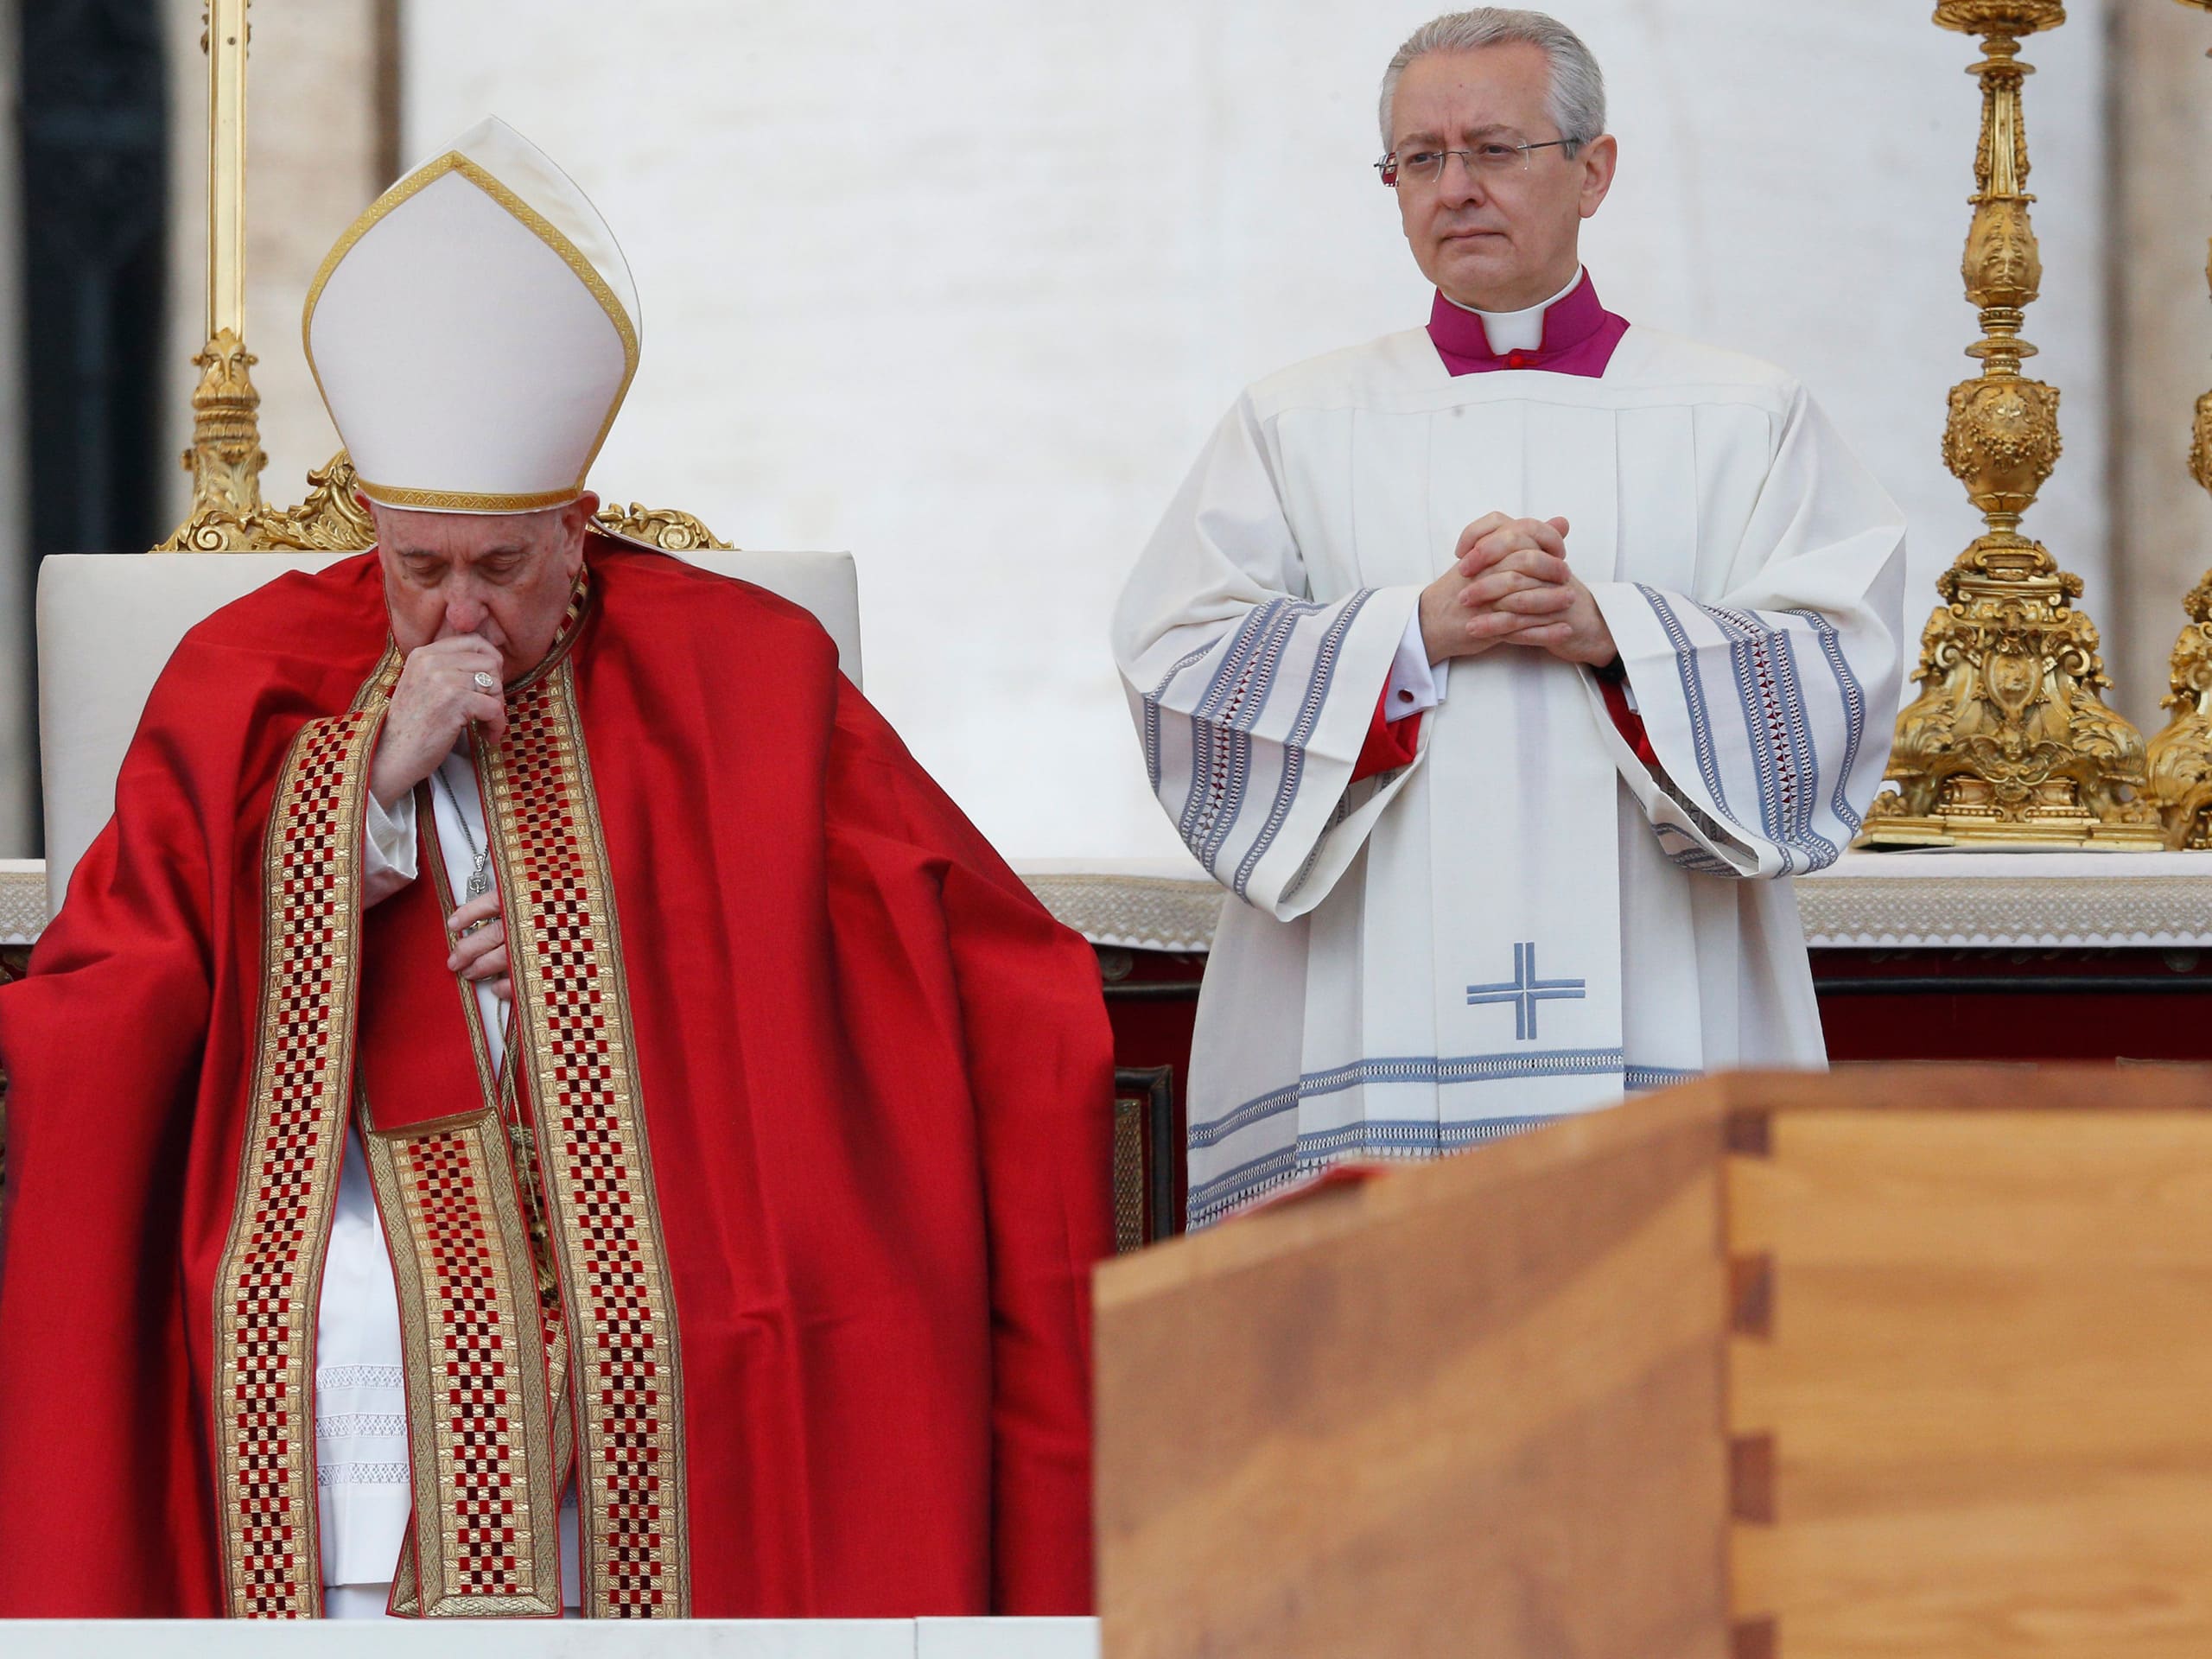 klynke i tilfælde af Hør efter At funeral, pope remembers Benedict's 'wisdom, tenderness, devotion' -  Arlington Catholic Herald